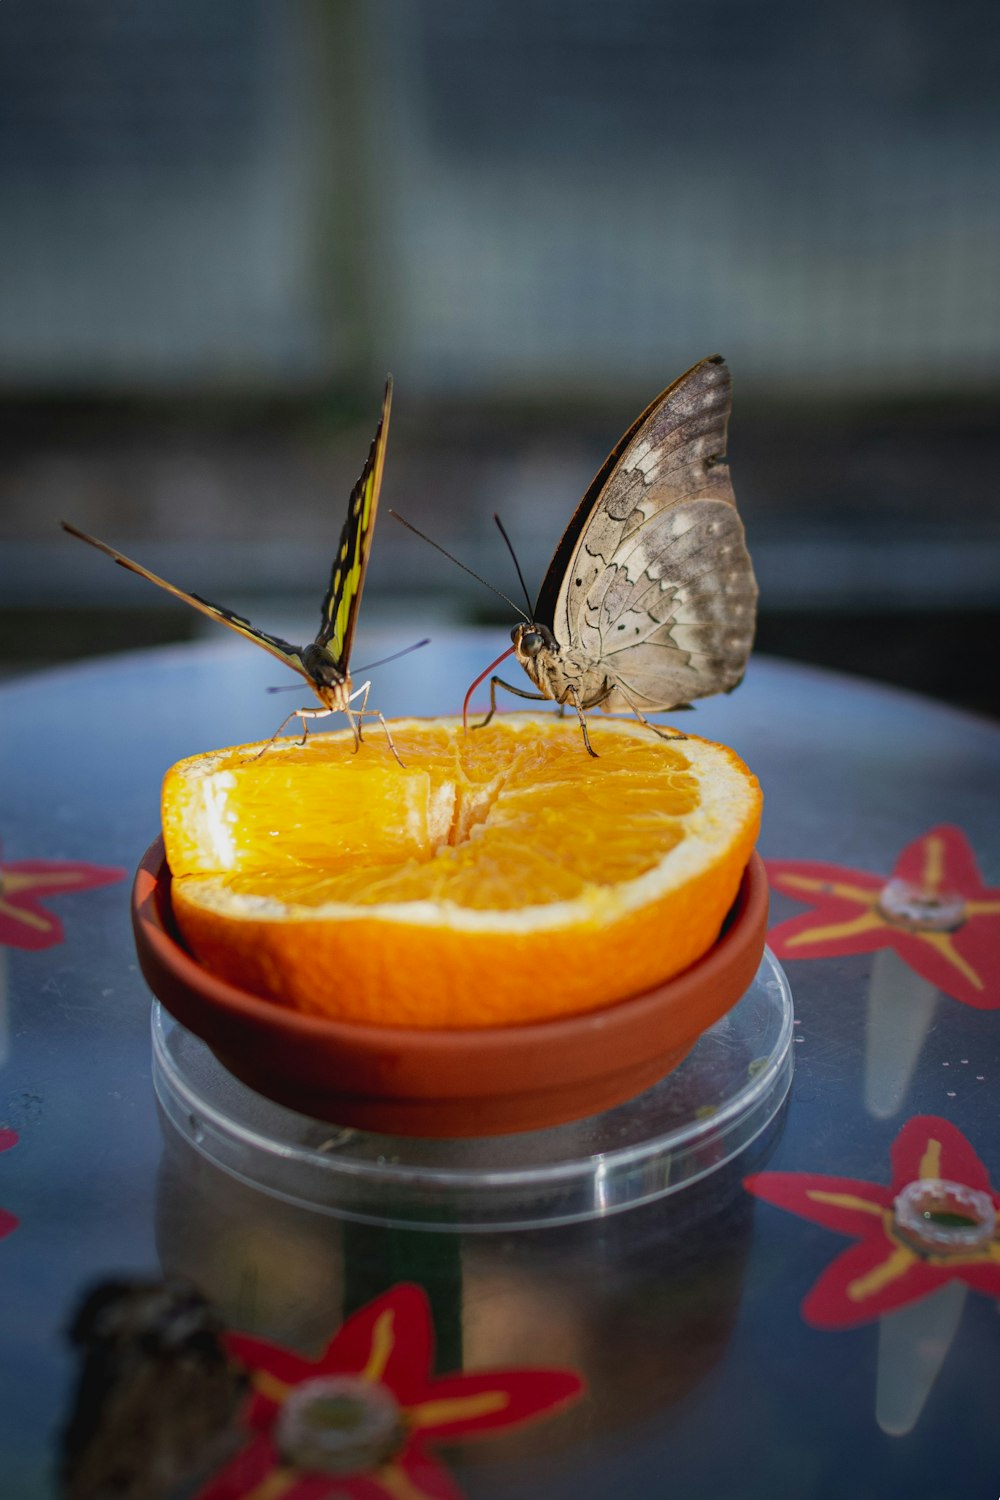 brown butterfly on orange fruit